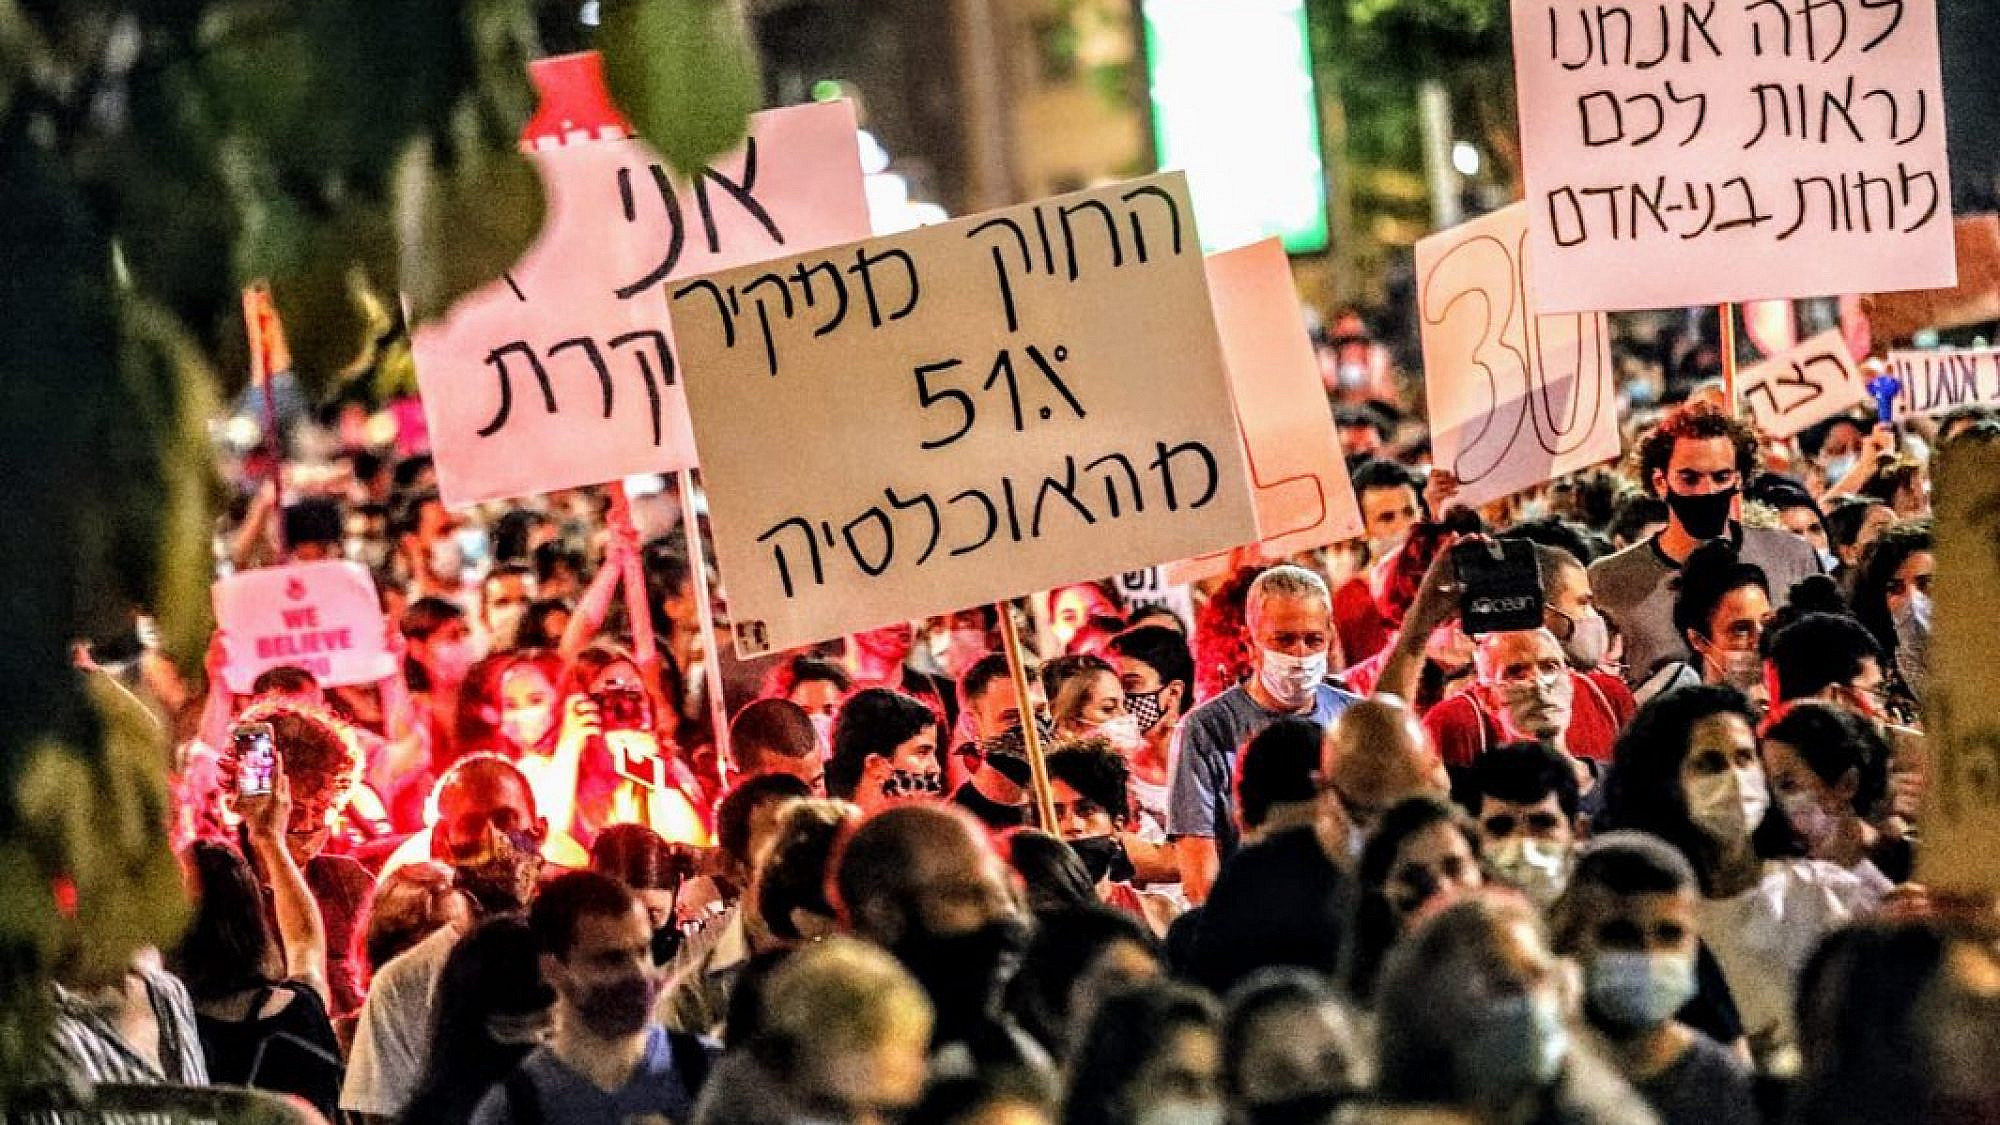 הפגנה נגד אלימות מינית, תל אביב 20.08 (צילום: שלומי יוסף)